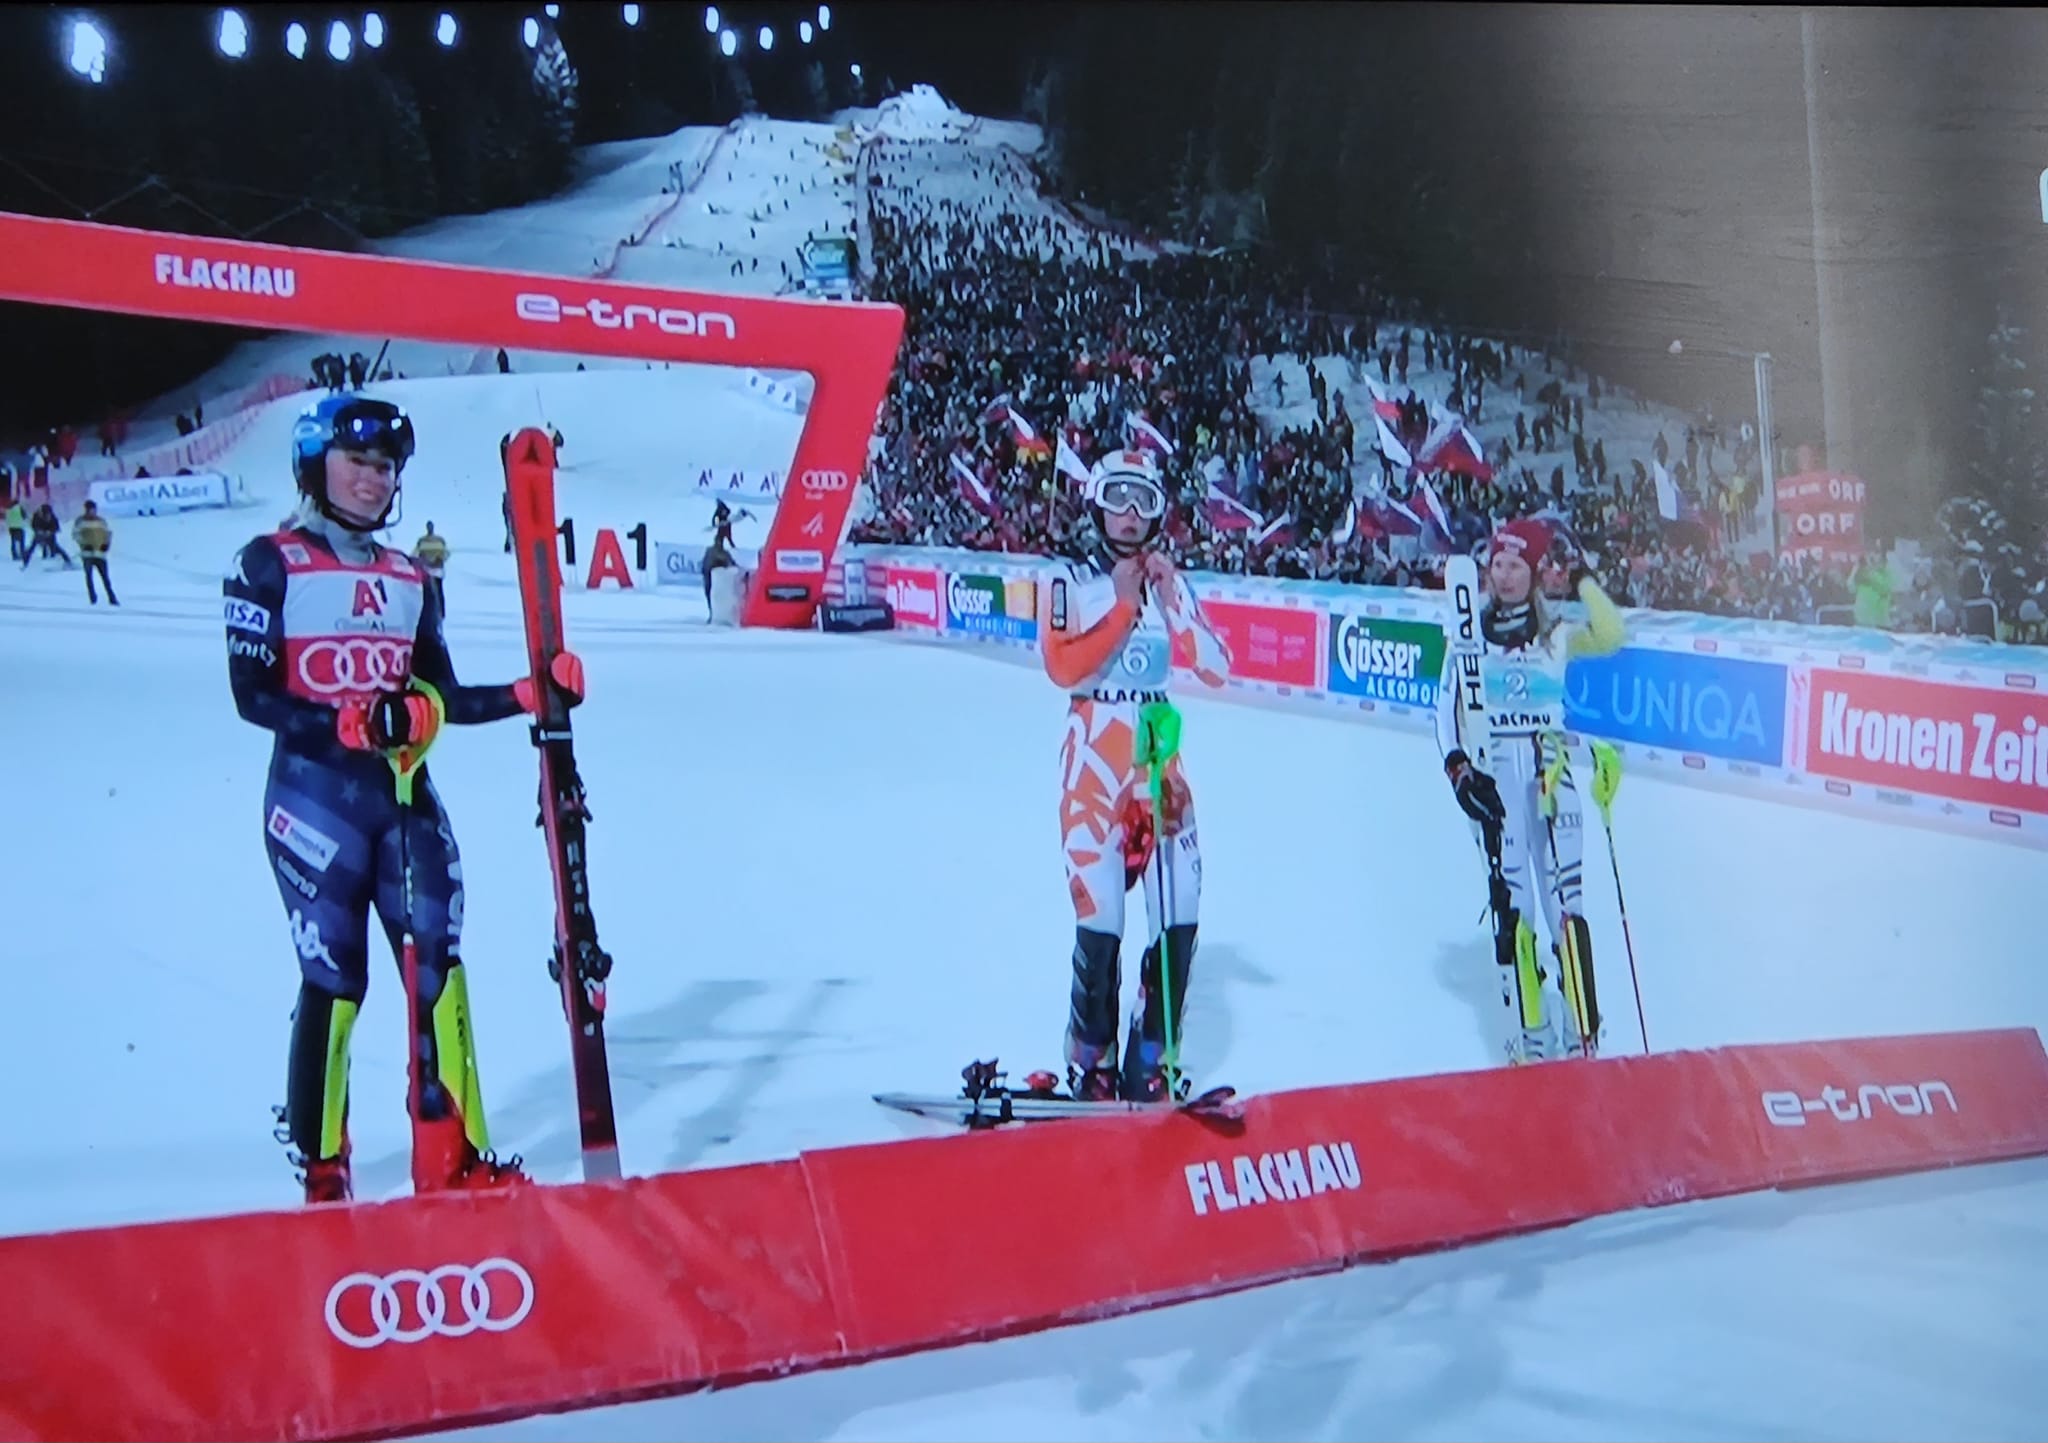 Vlhova deja en suspenso el récord de Shiffrin de victorias en Copa del Mundo de esqui alpino